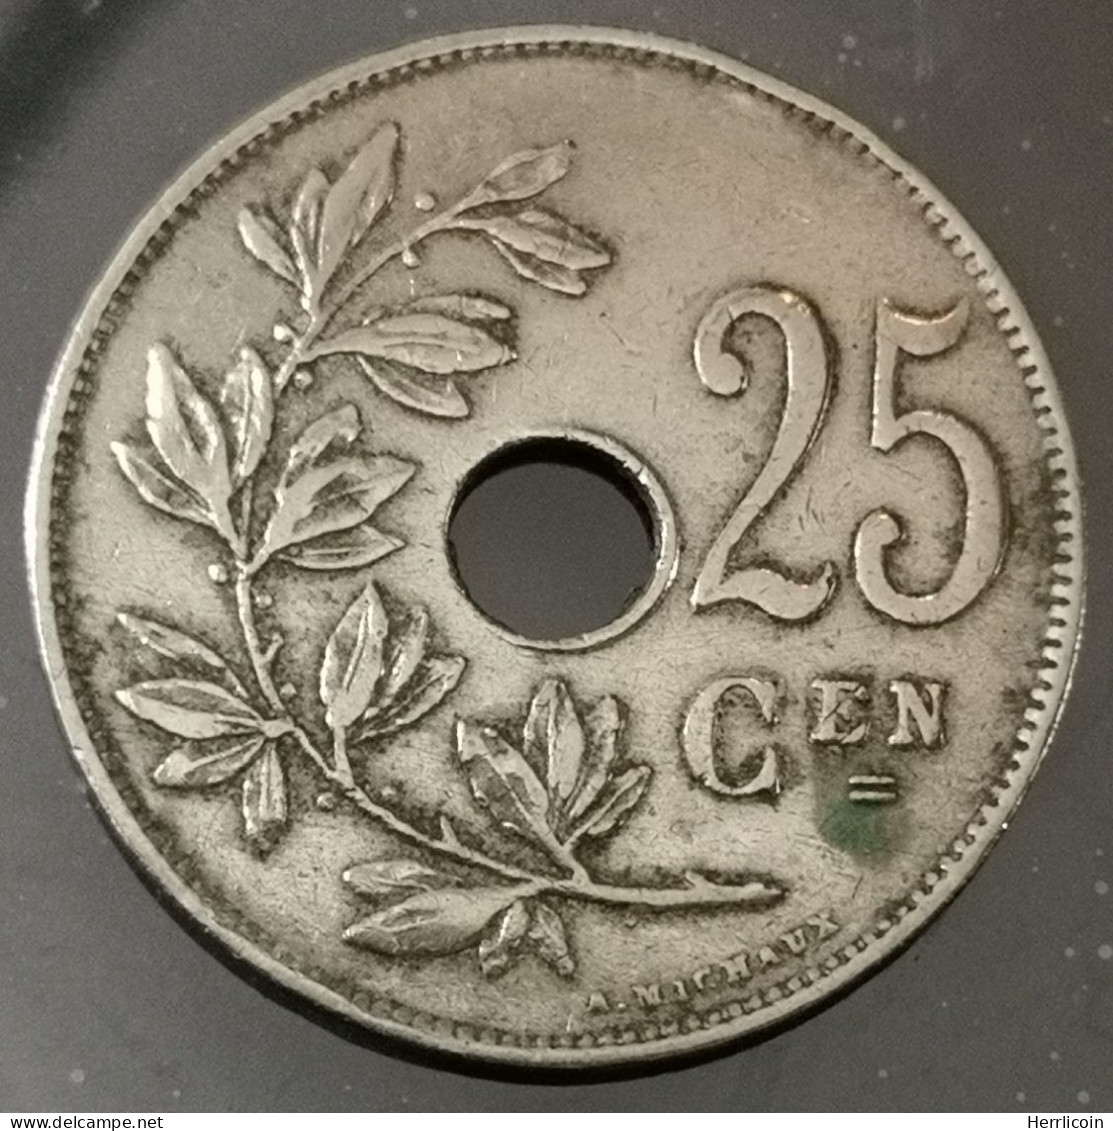 Monnaie Belgique - 1921 - 25 Centimes - Albert Ier - Type Michaux En Néerlandais - 25 Cents